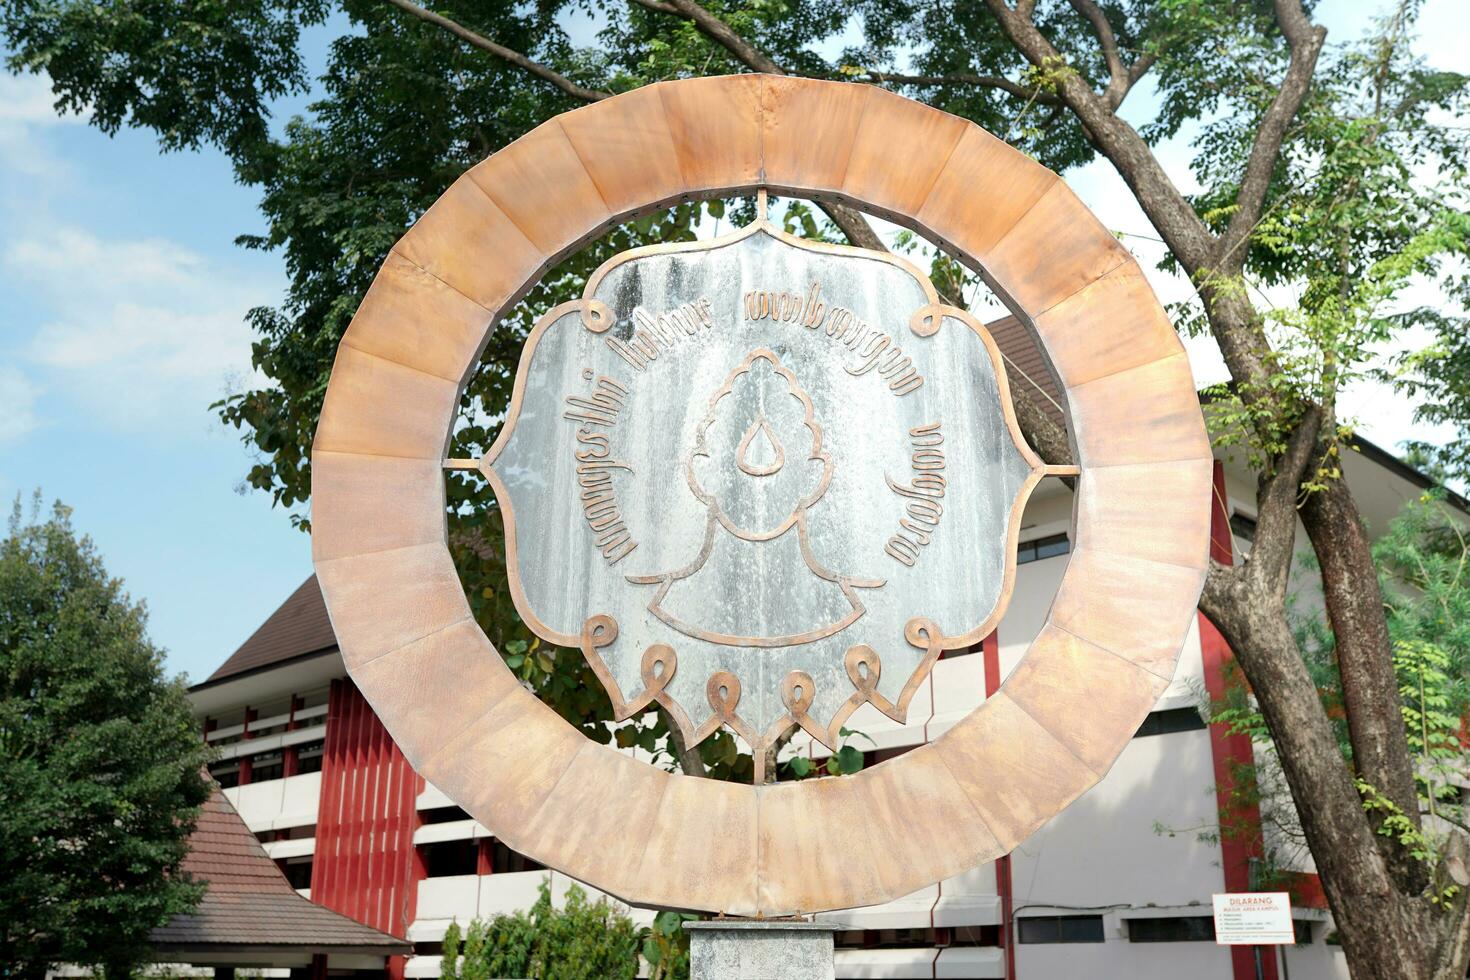 solo, Indonesia - 15 de Junio 2022. sebelas mercado Universidad emblema, bronce emblema de educativo instituciones en solo. texto marzo once foto